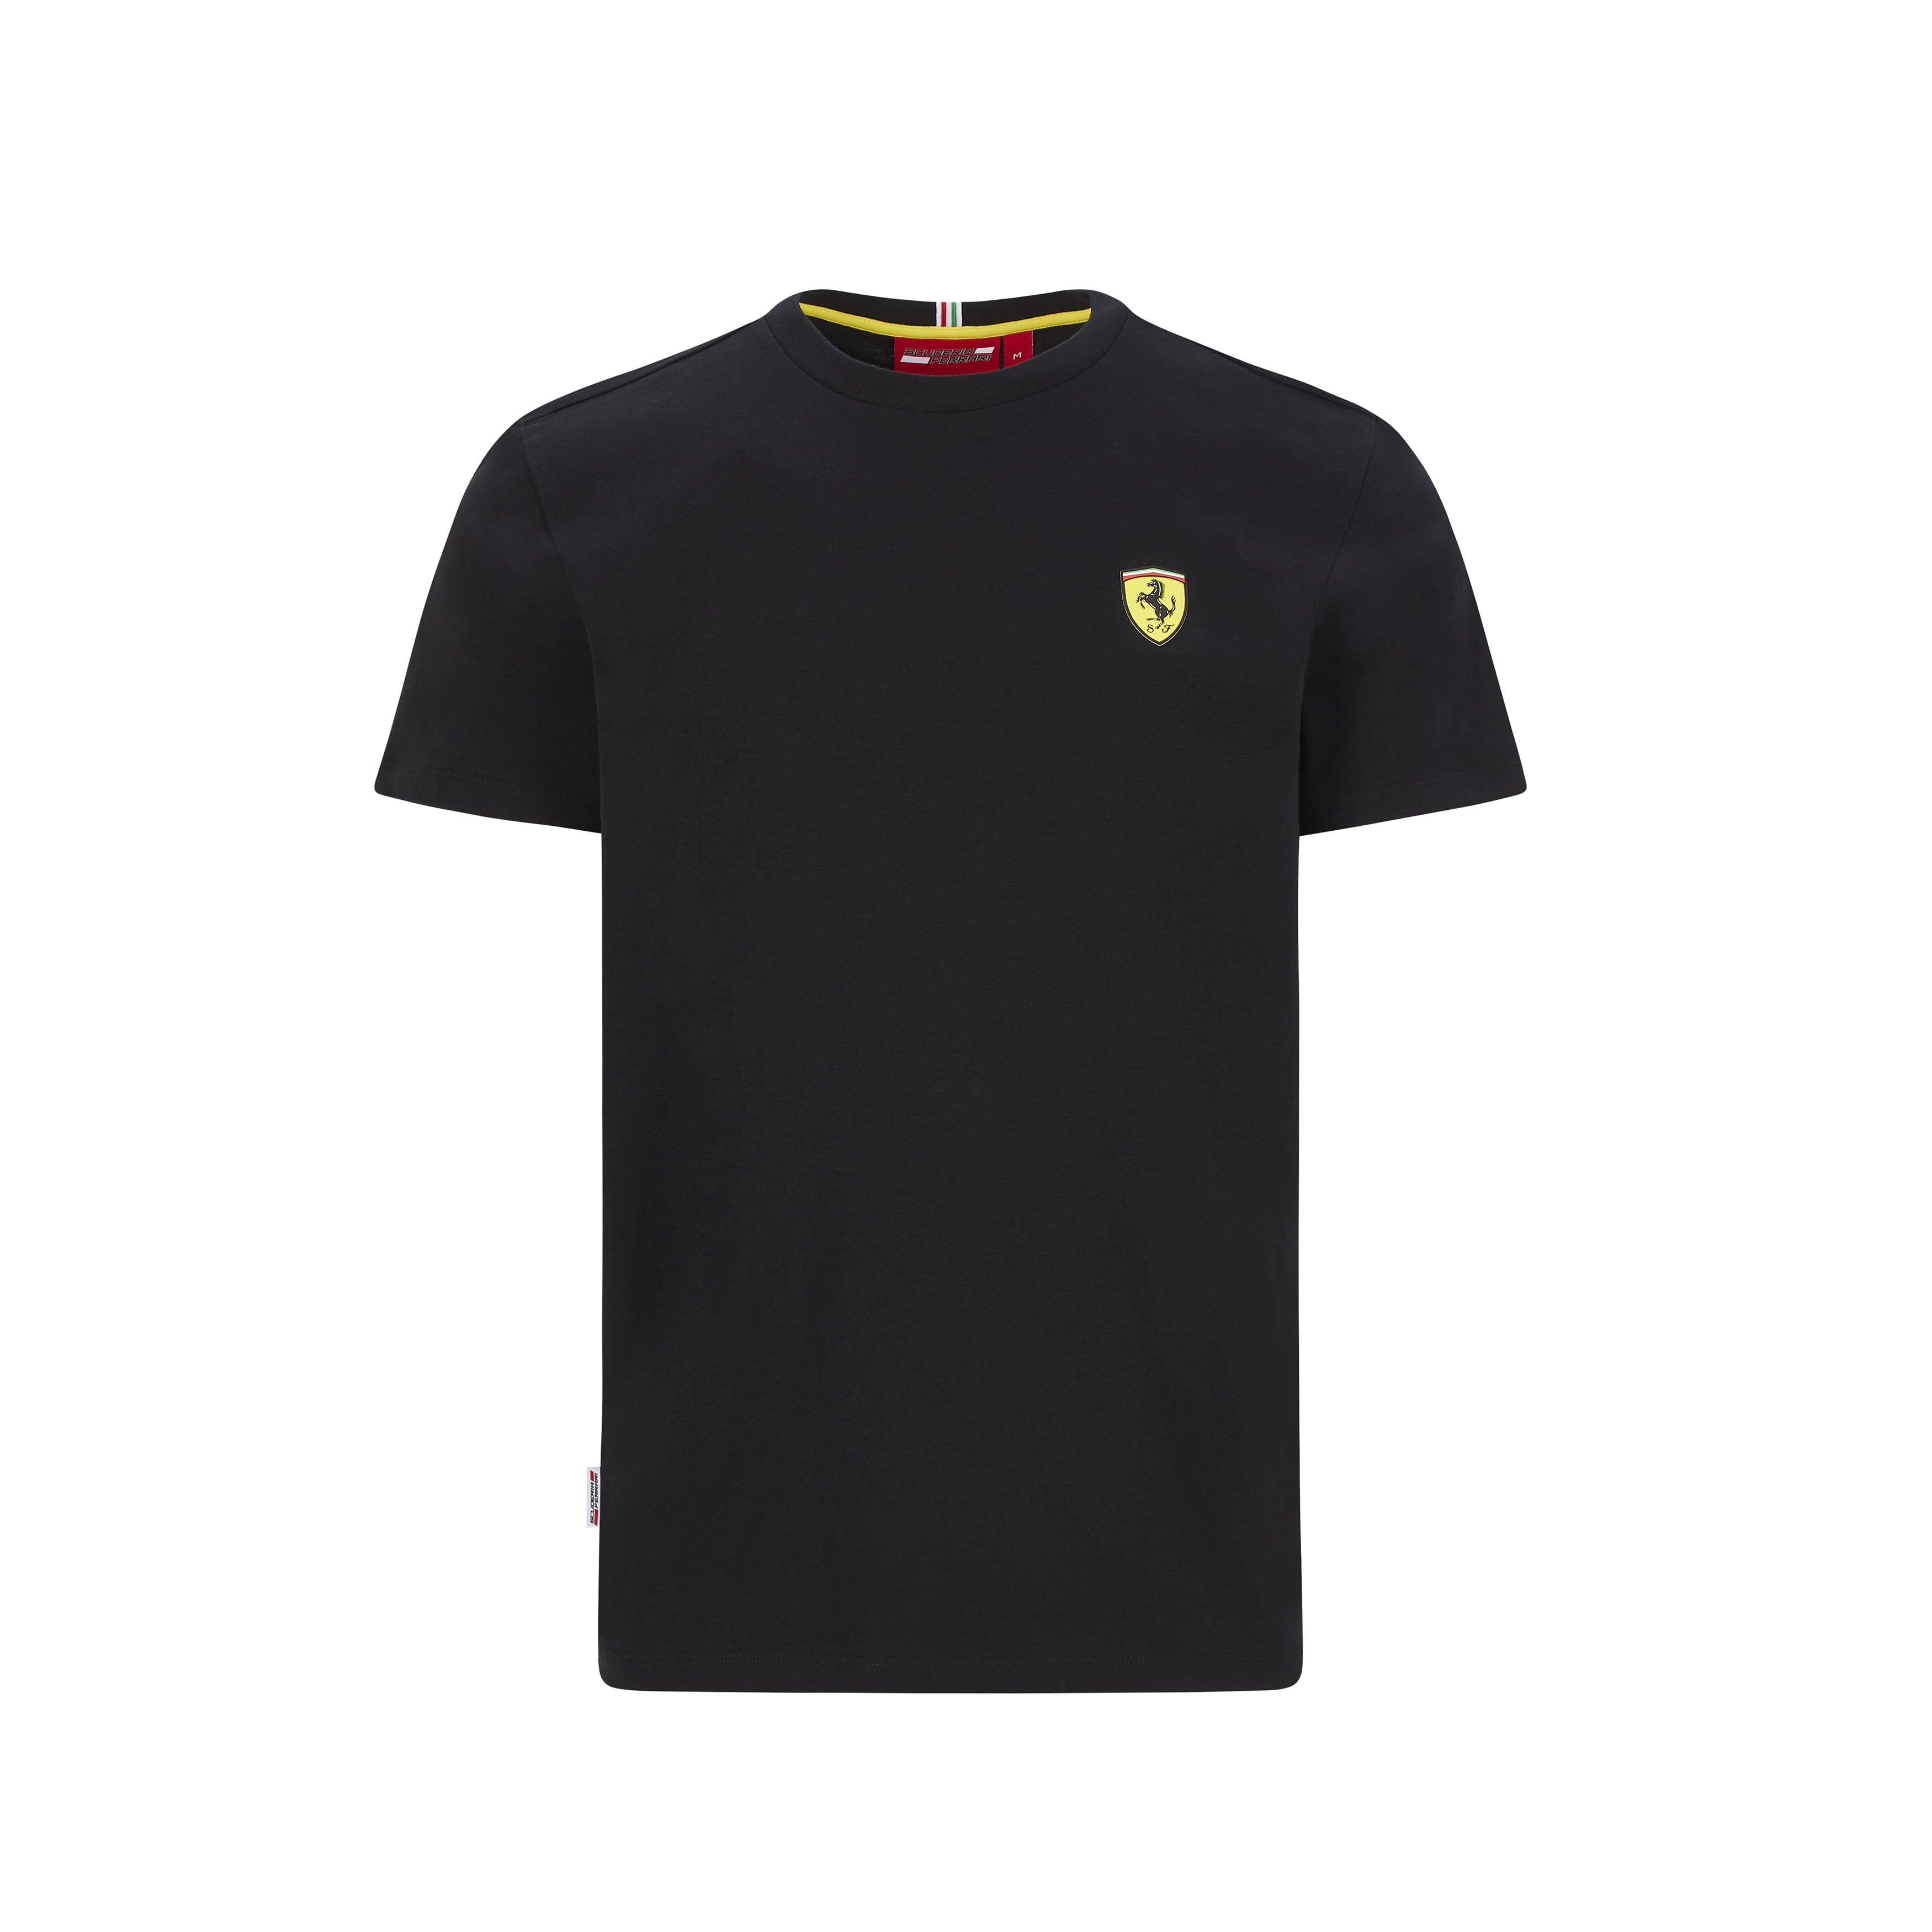 Scuderia Ferrari - Scuderia Ferrari F1 Men's Small Shield T-Shirt Black ...